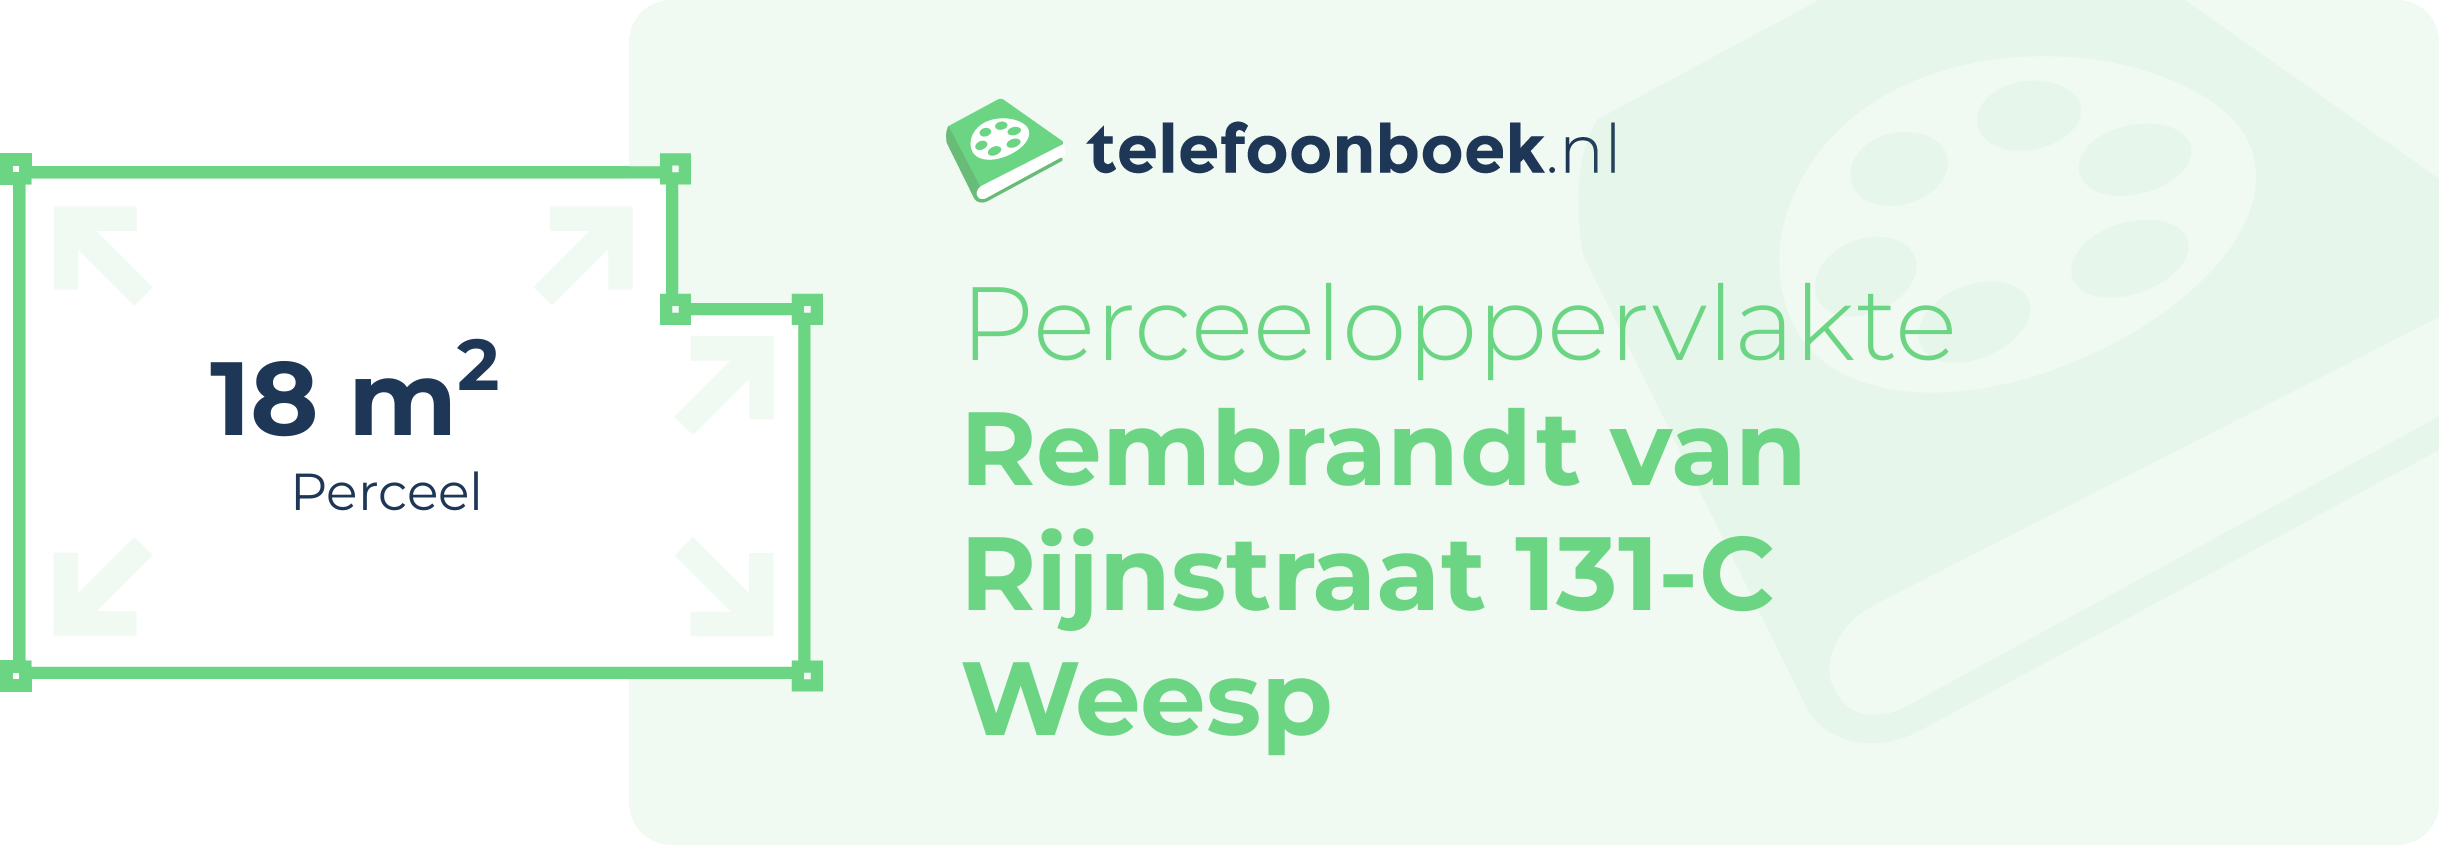 Perceeloppervlakte Rembrandt Van Rijnstraat 131-C Weesp